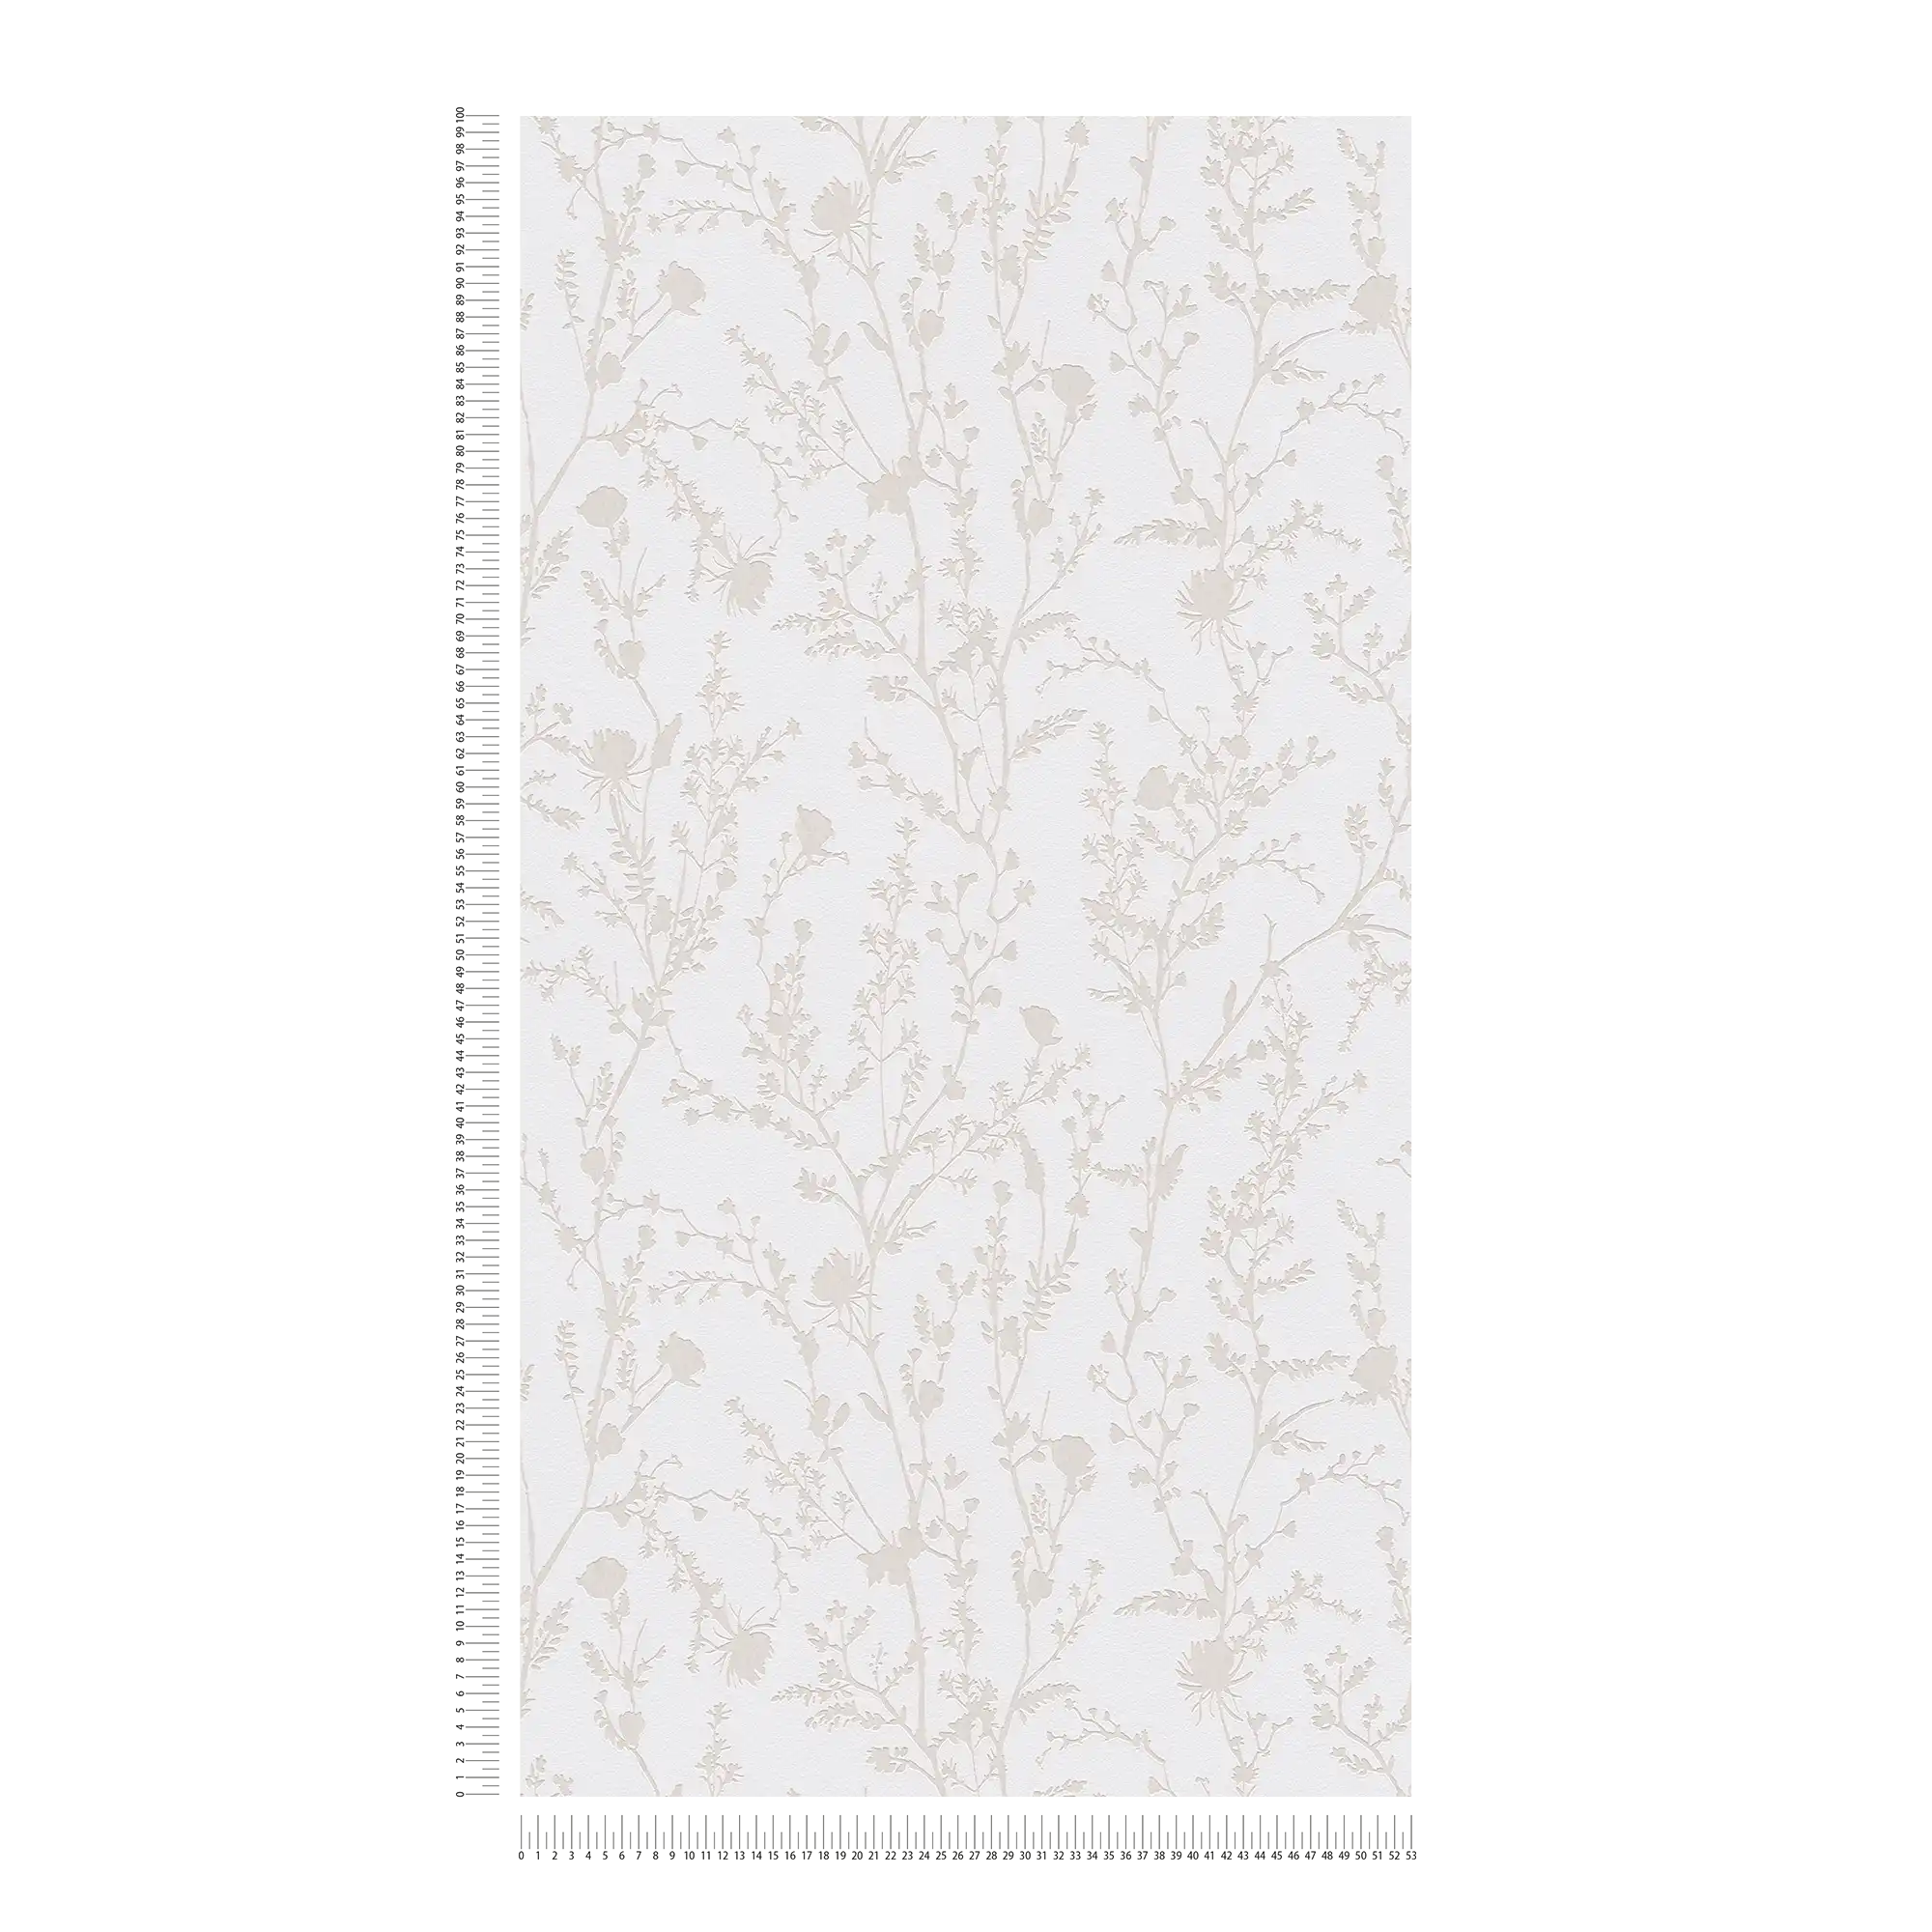             Carta da parati non tessuta con motivo floreale - grigio chiaro, bianco
        